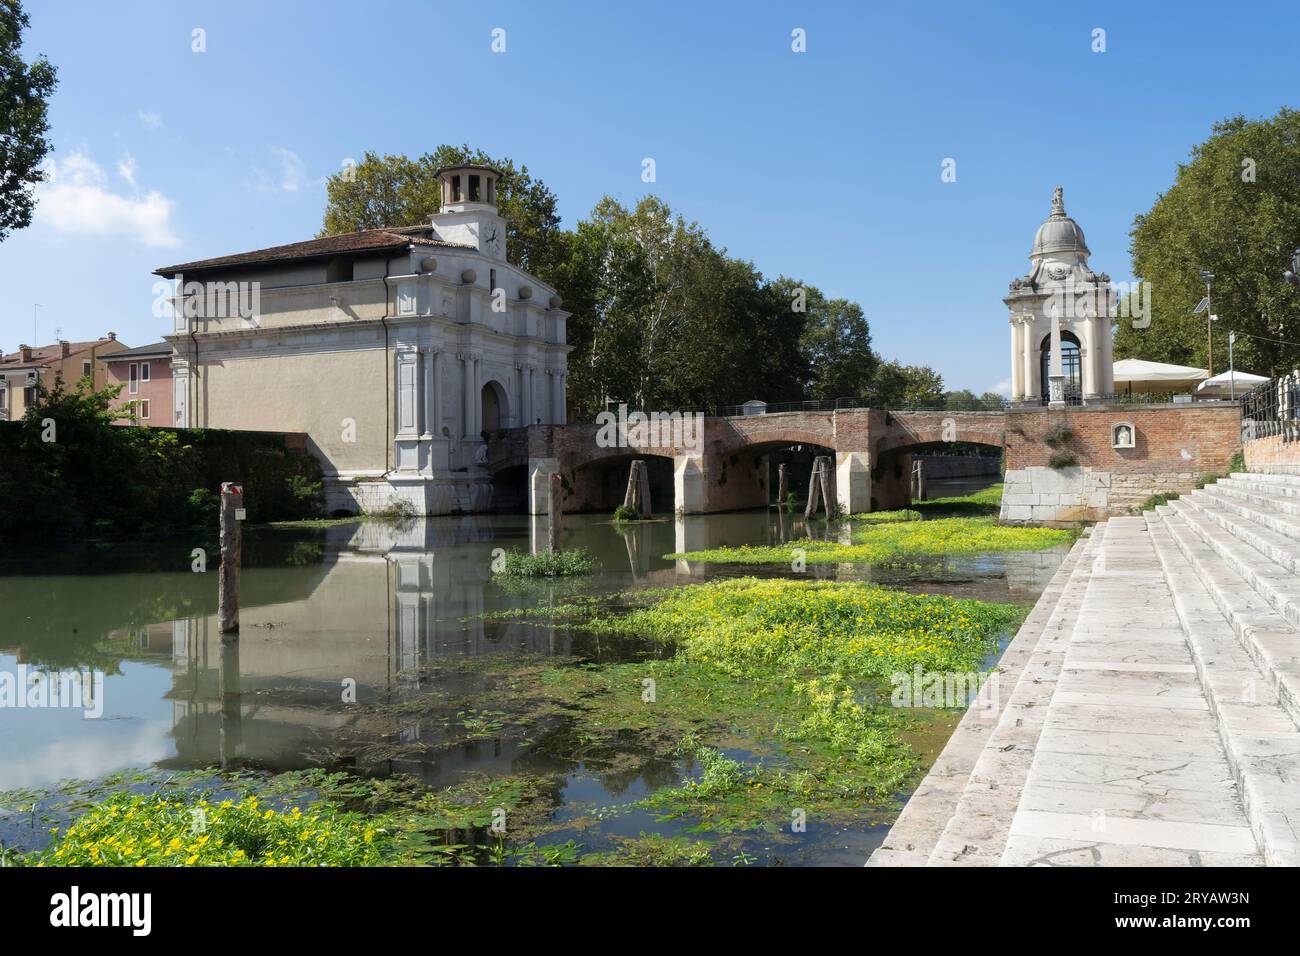 Die Portello-Flusslandung im historischen Zentrum von Padua ist ein bedeutender Wasserort mit Handel, Architektur und jahrhundertealten Bräuchen entlang der kana Stockfoto